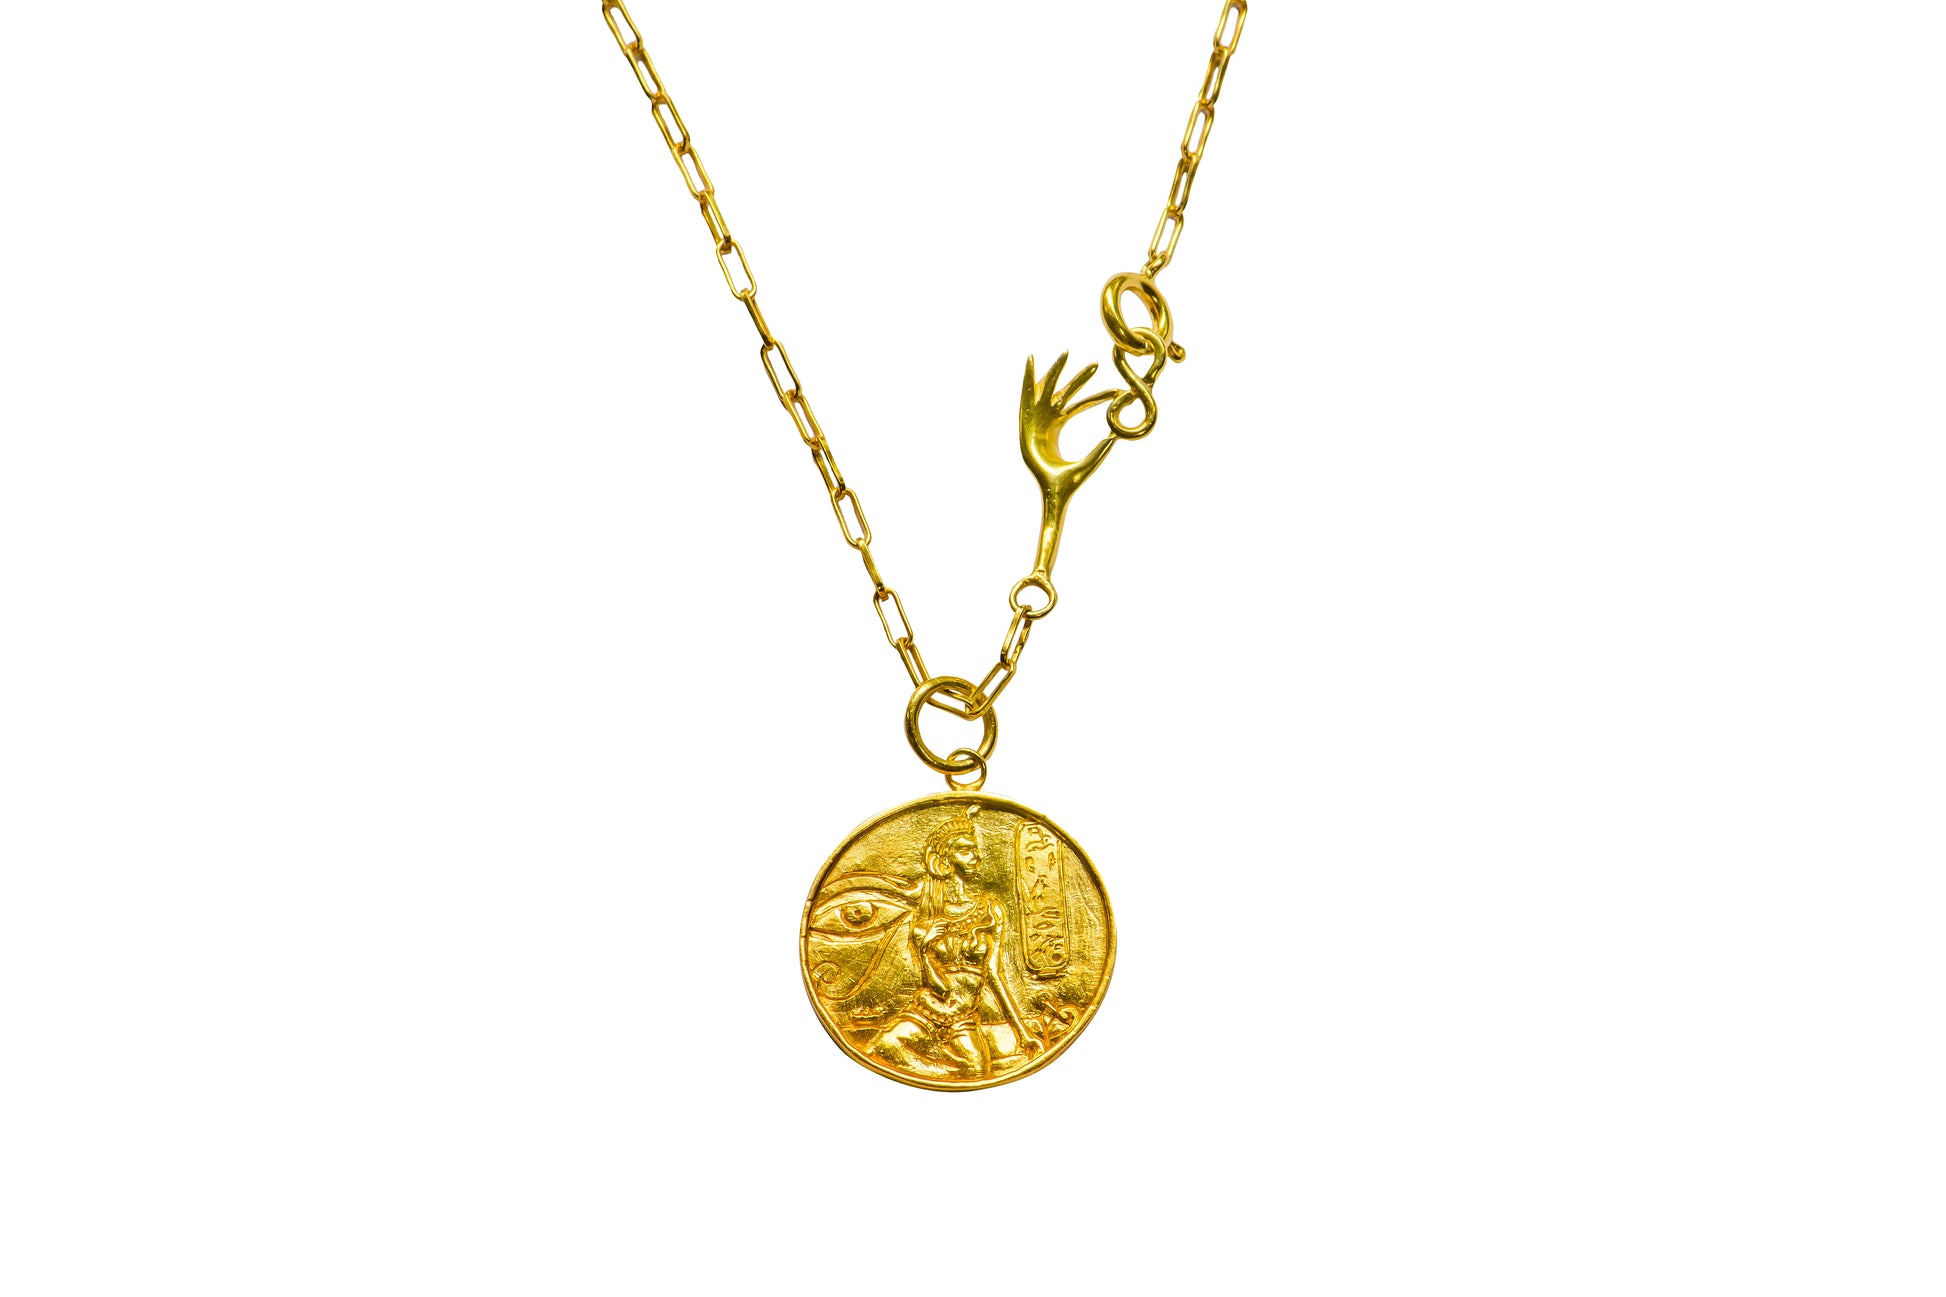 gold medallion necklace details